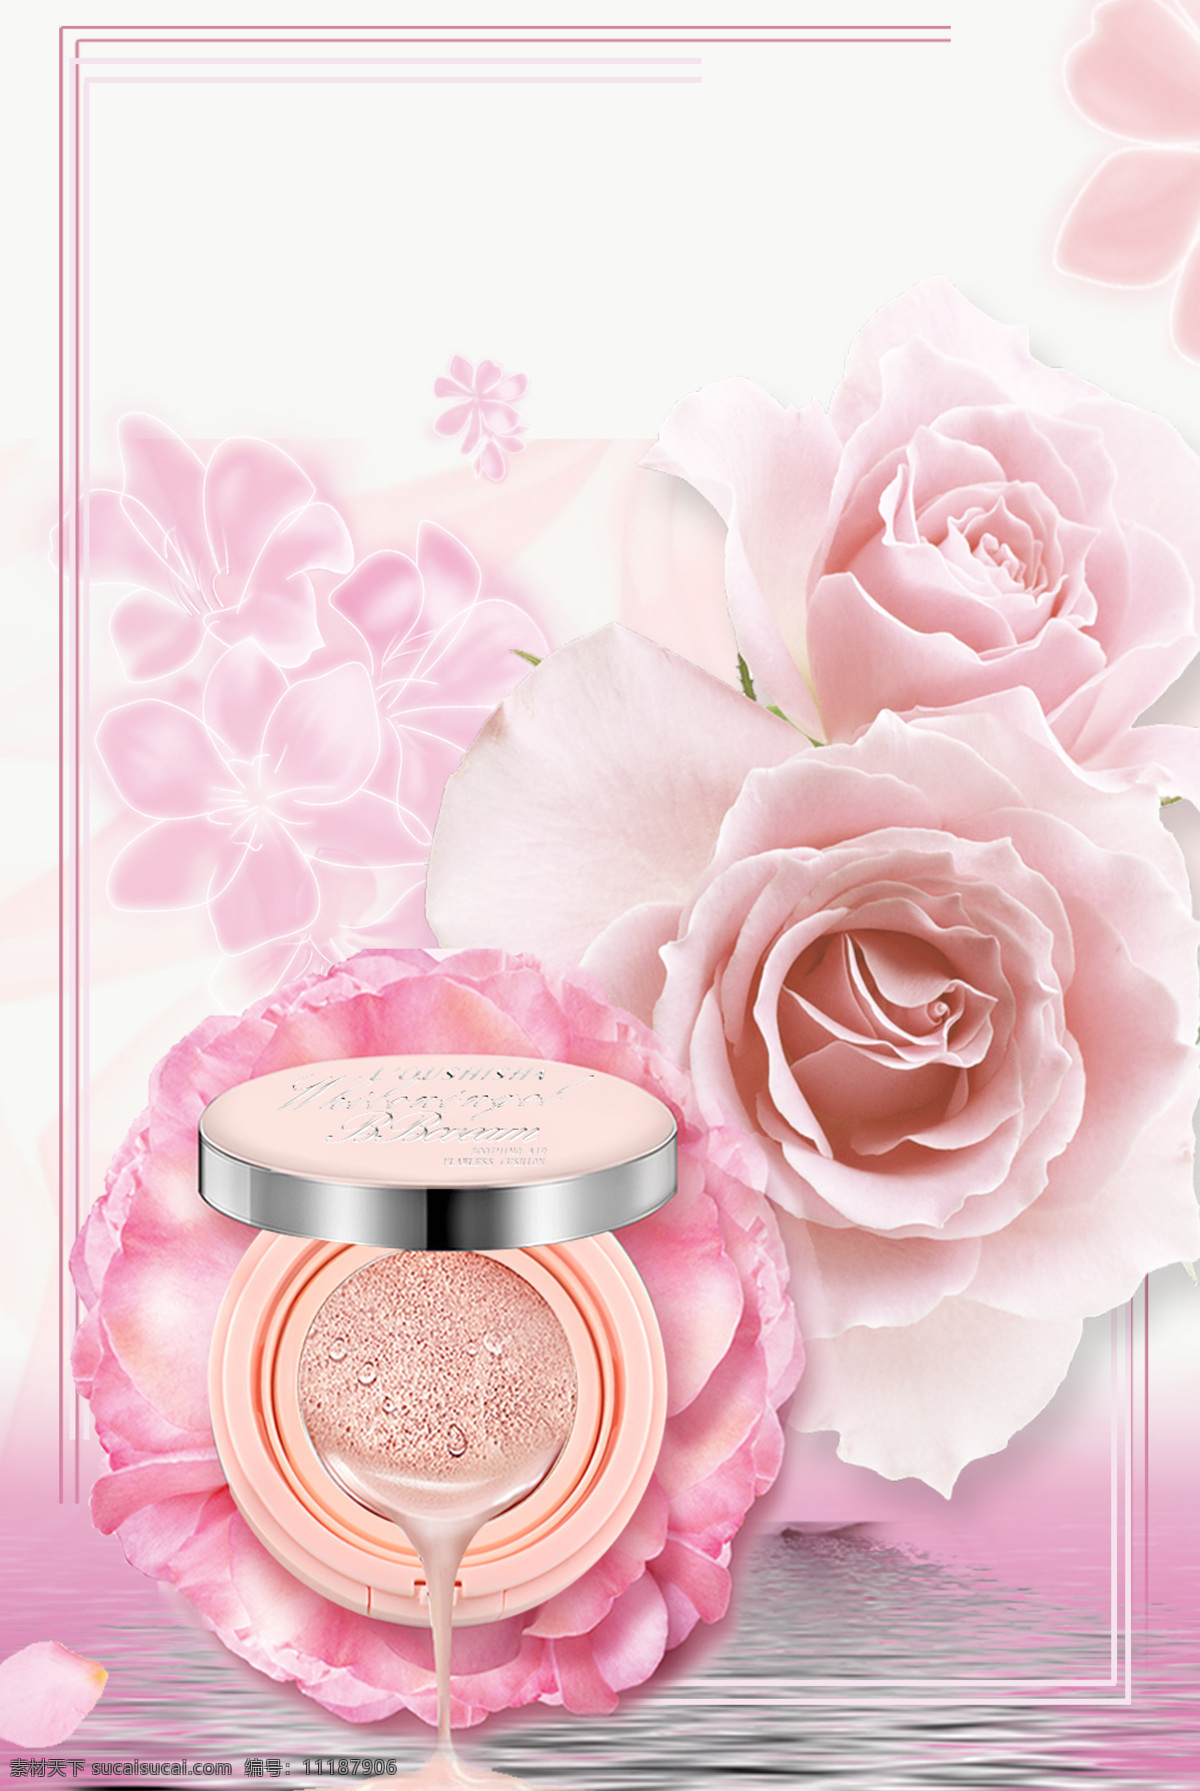 浪漫 花朵 美 妆 背景 边框 线条 粉色渐变 美妆 粉底 海报 广告